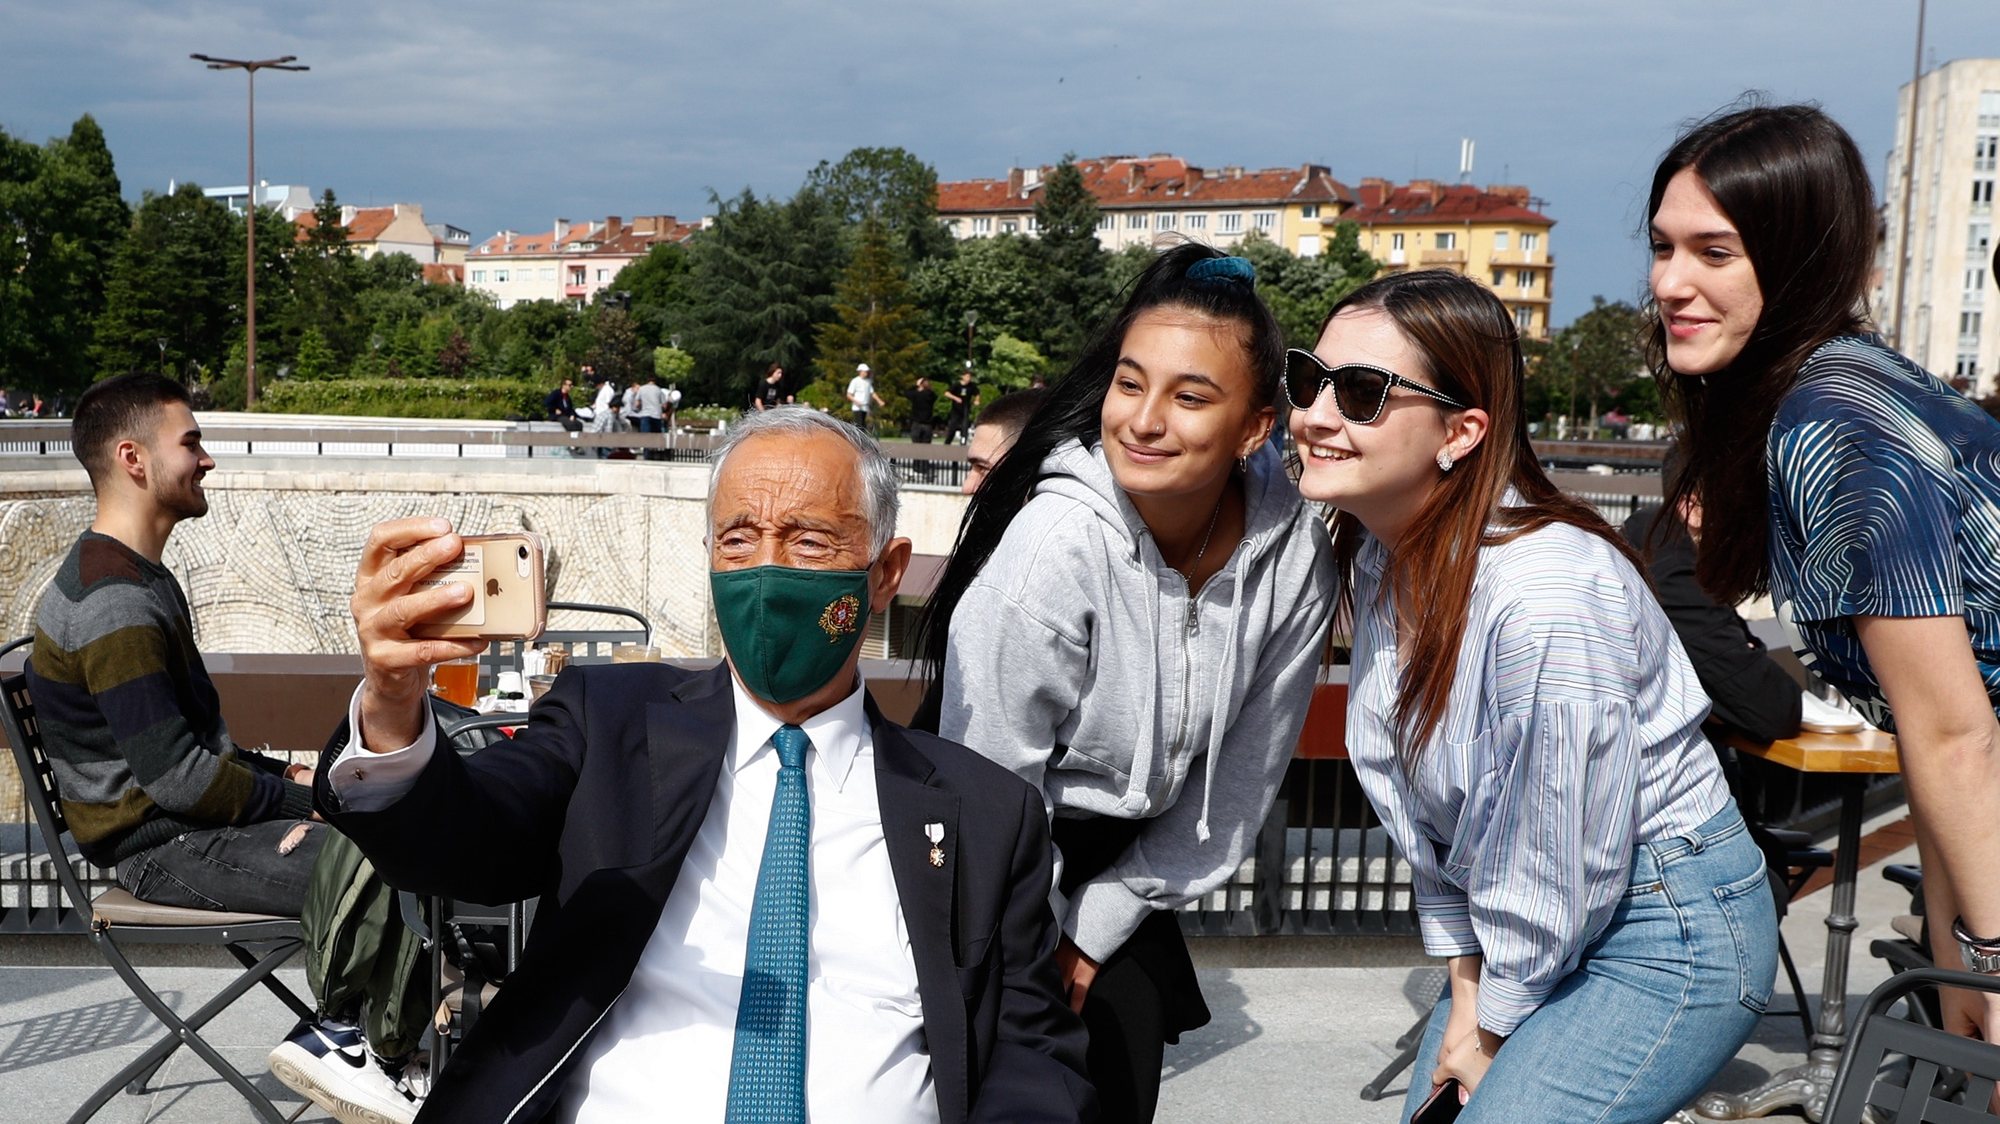 O Presidente da República de Portugal, Marcelo Rebelo de Sousa, tira uma selfie durante um passeio pelo centro da cidade, Sófia, Bulgária, 02 de junho de 2021. Marcelo Rebelo de Sousa, está na Bulgária, para uma Visita Oficial de três dias. ANTÓNIO COTRIM/LUSA